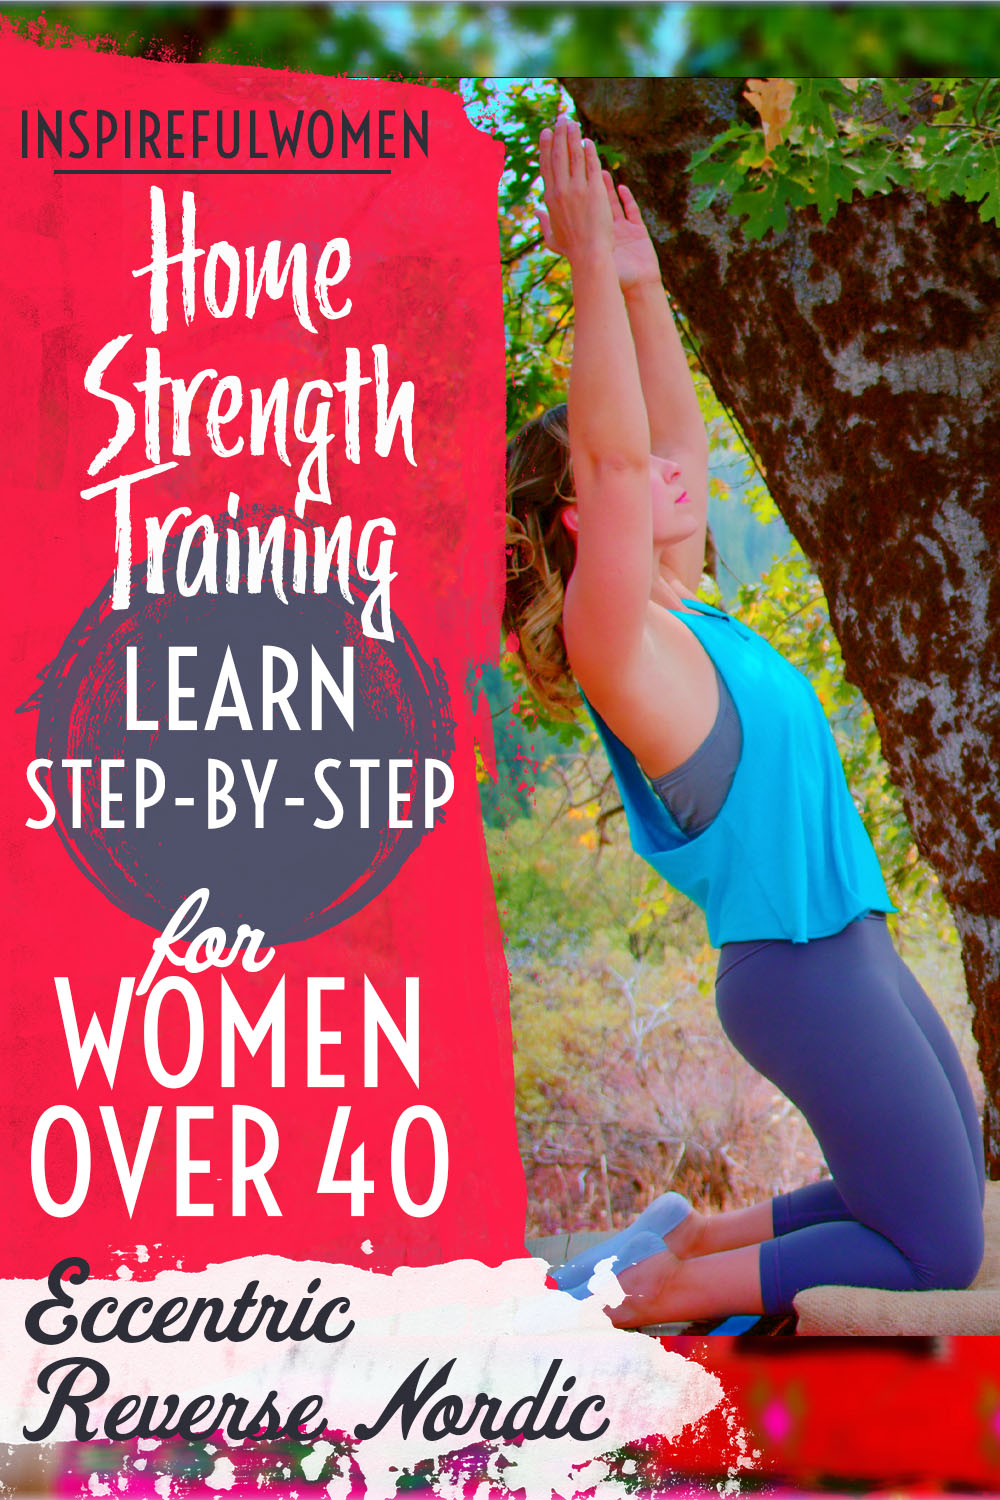 eccentric-reverse-nordic-curl-home-quadriceps-exercise-strength-training-women-40+